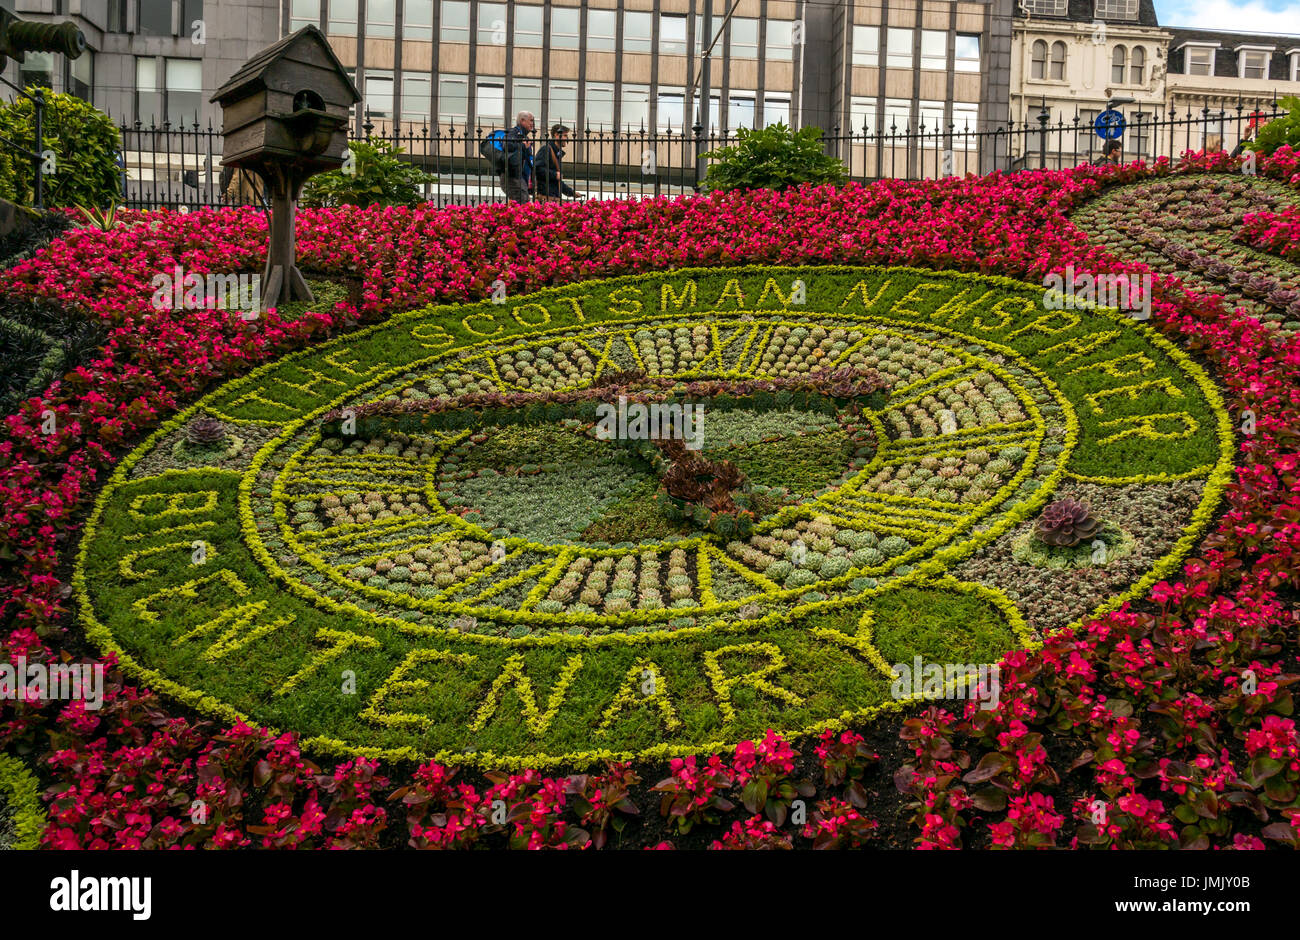 Le centre-ville d'Édimbourg, l'horloge florale plus ancien réveil dans le monde recréé chaque année, en 2017 la commémoration du bicentenaire de journal The Scotsman Banque D'Images